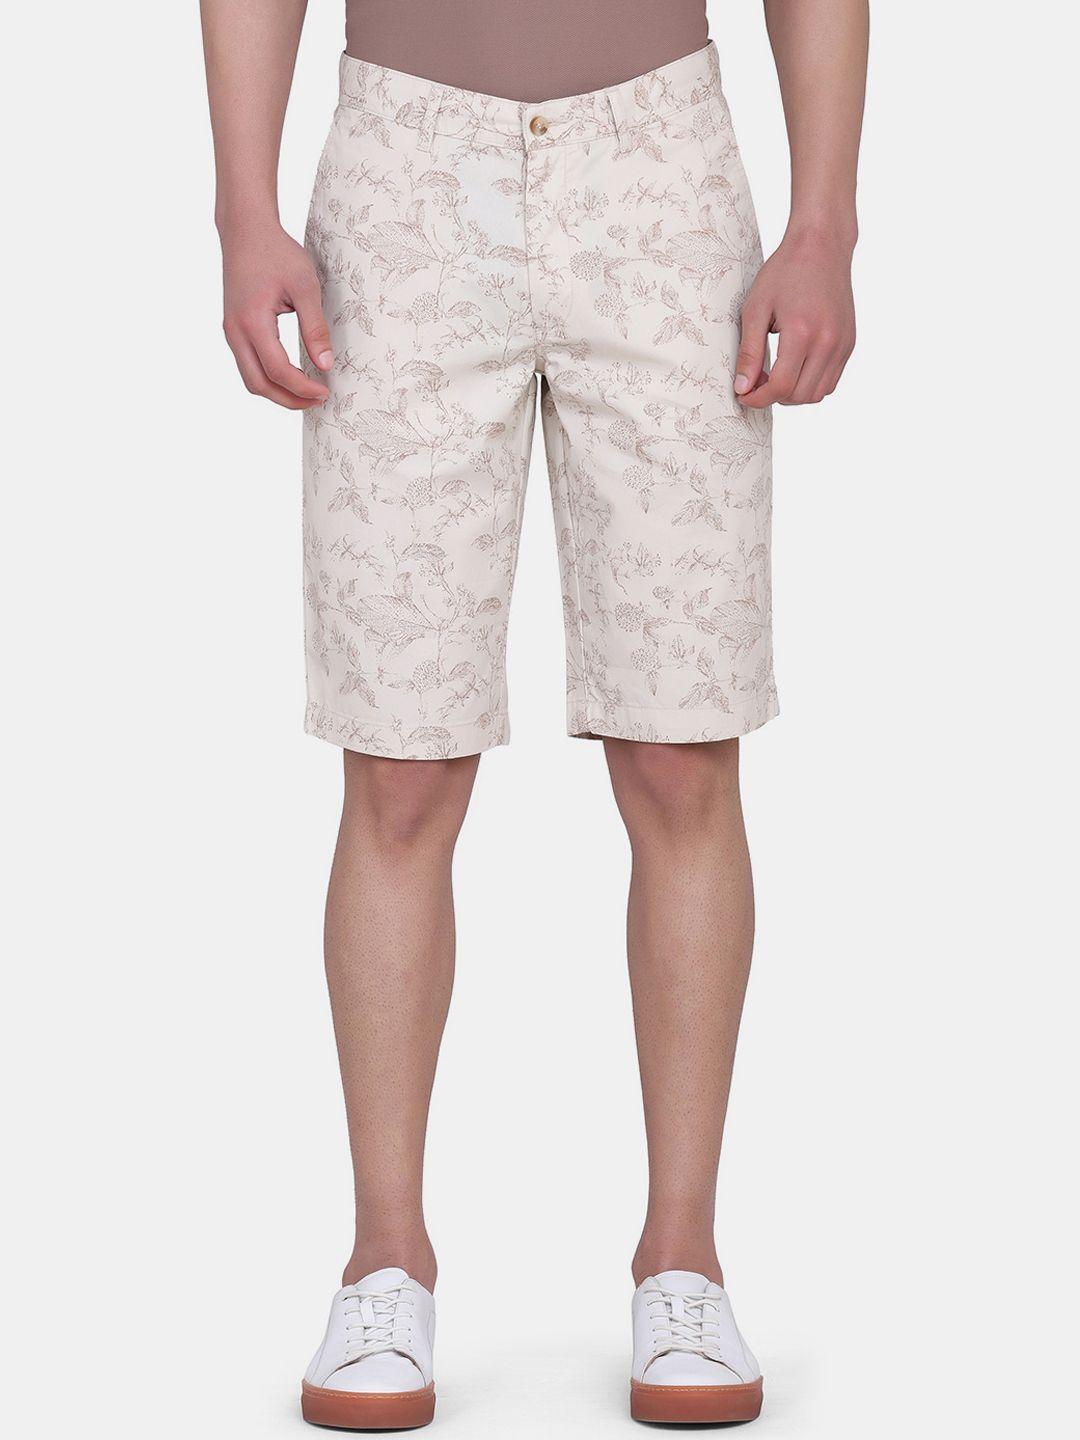 blackberrys-men-beige-floral-printed-bs-10-slim-fit-low-rise-cotton-shorts